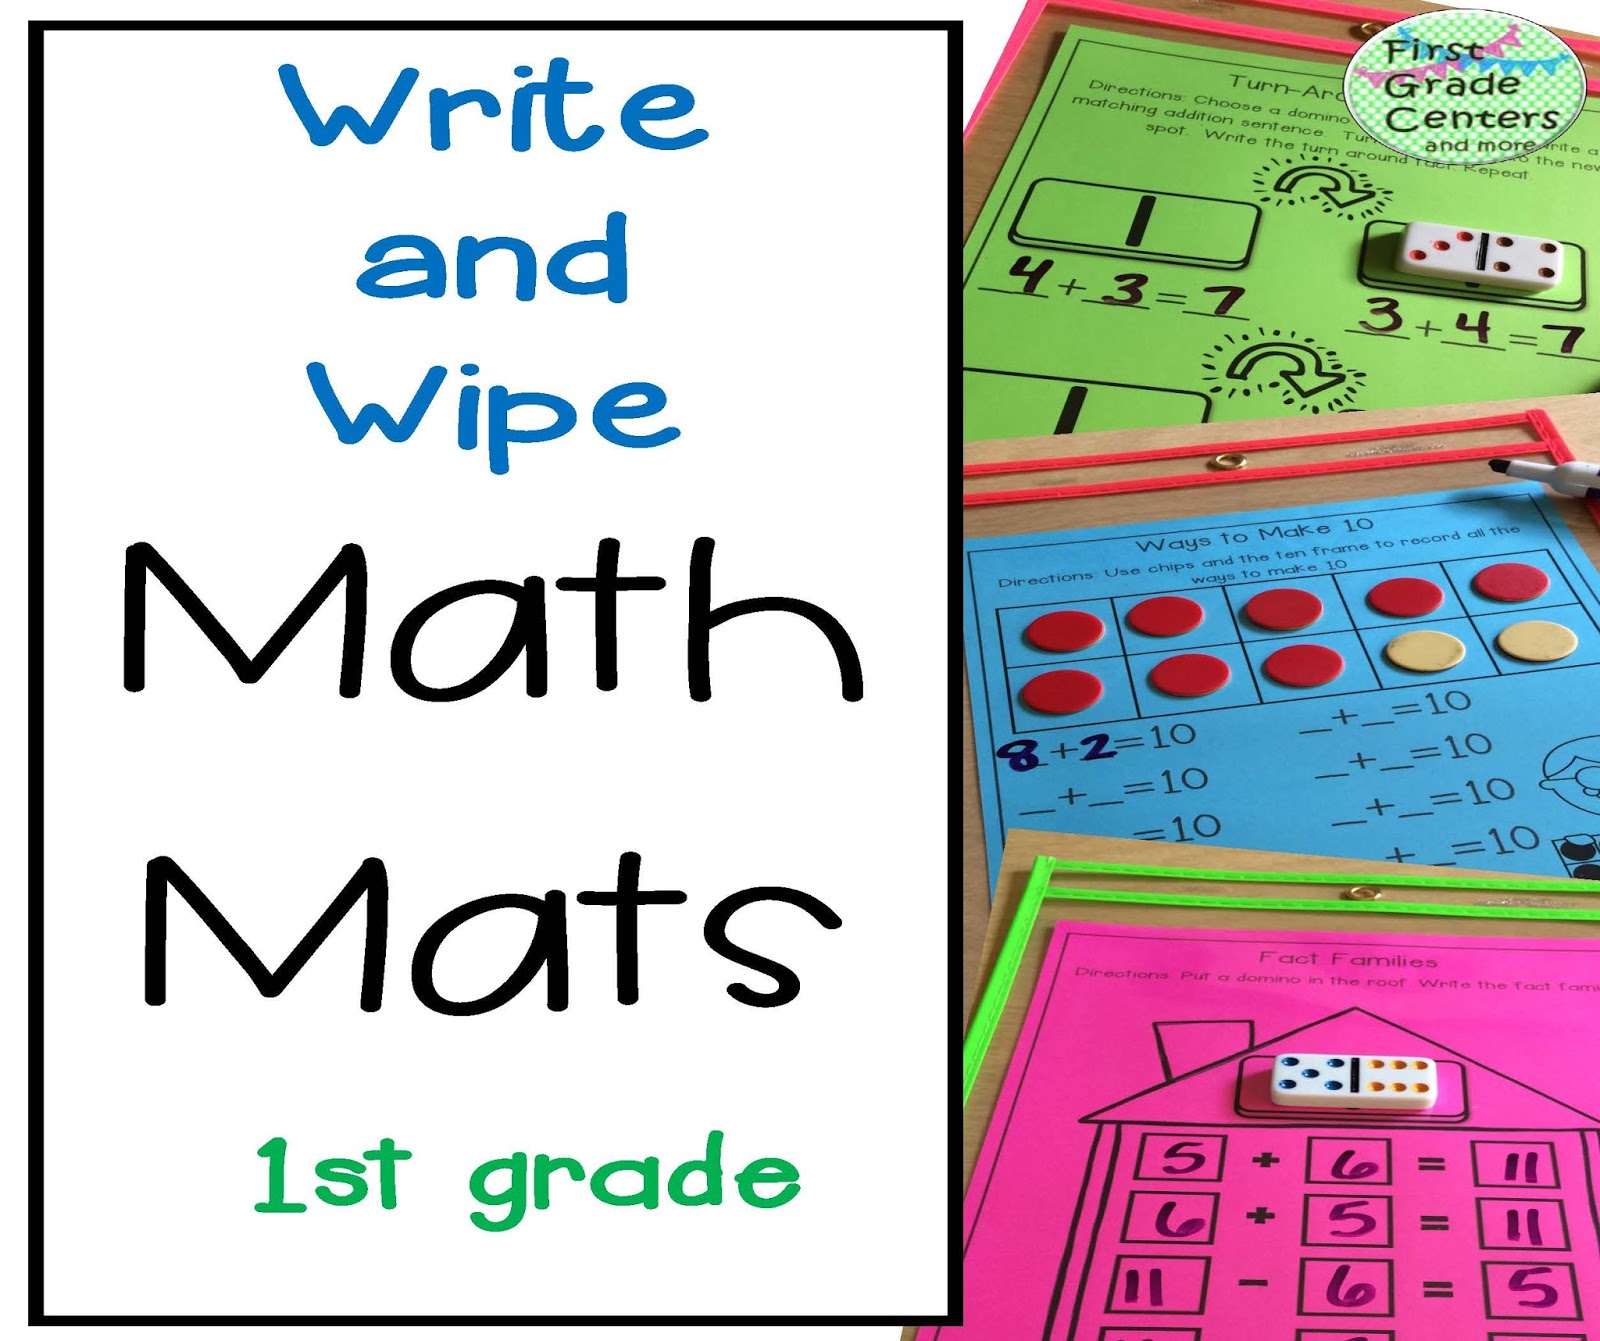 First math. Math book 1 Grade pdf. Product in Math. Mat is Math ориг без подписей. Mat for write.